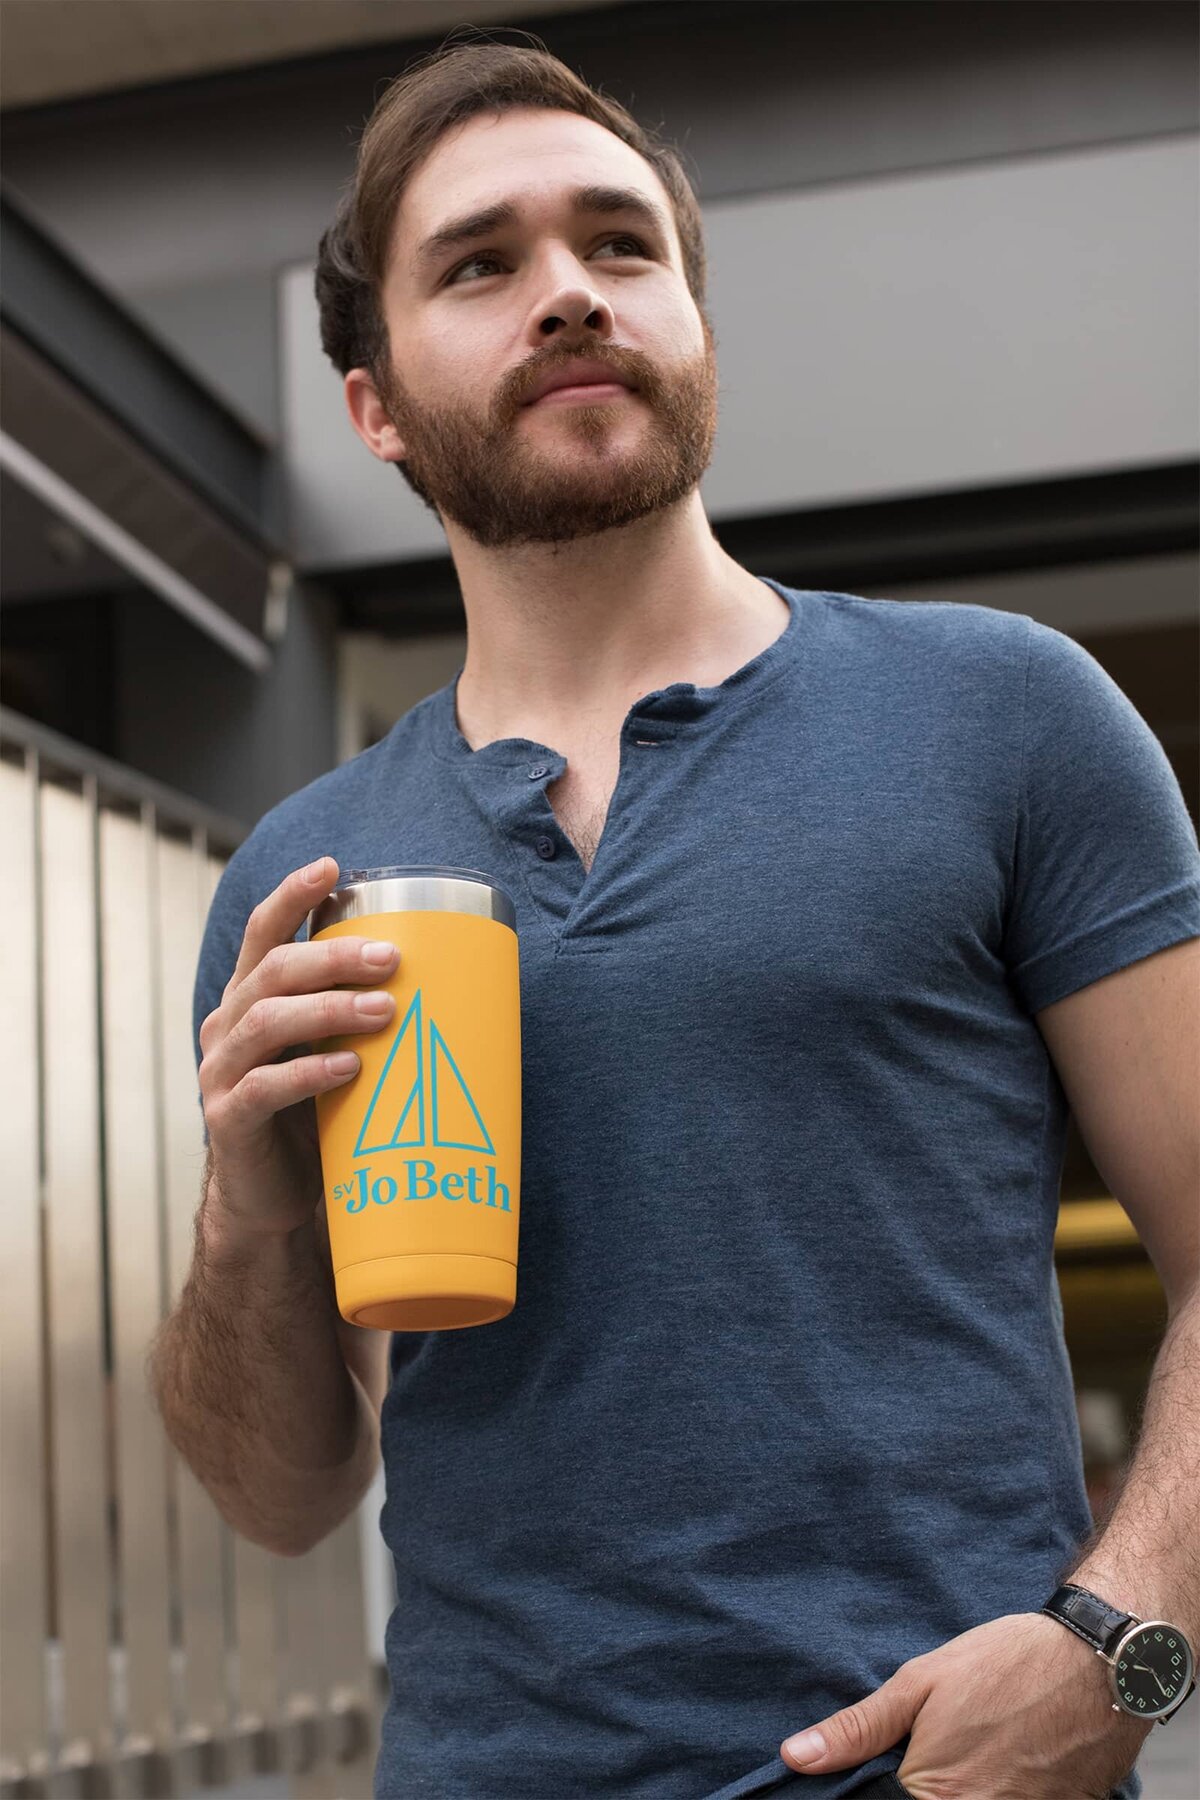 A pensive, bearded man holds an orange travel mug with a blue SV Jo Beth logo